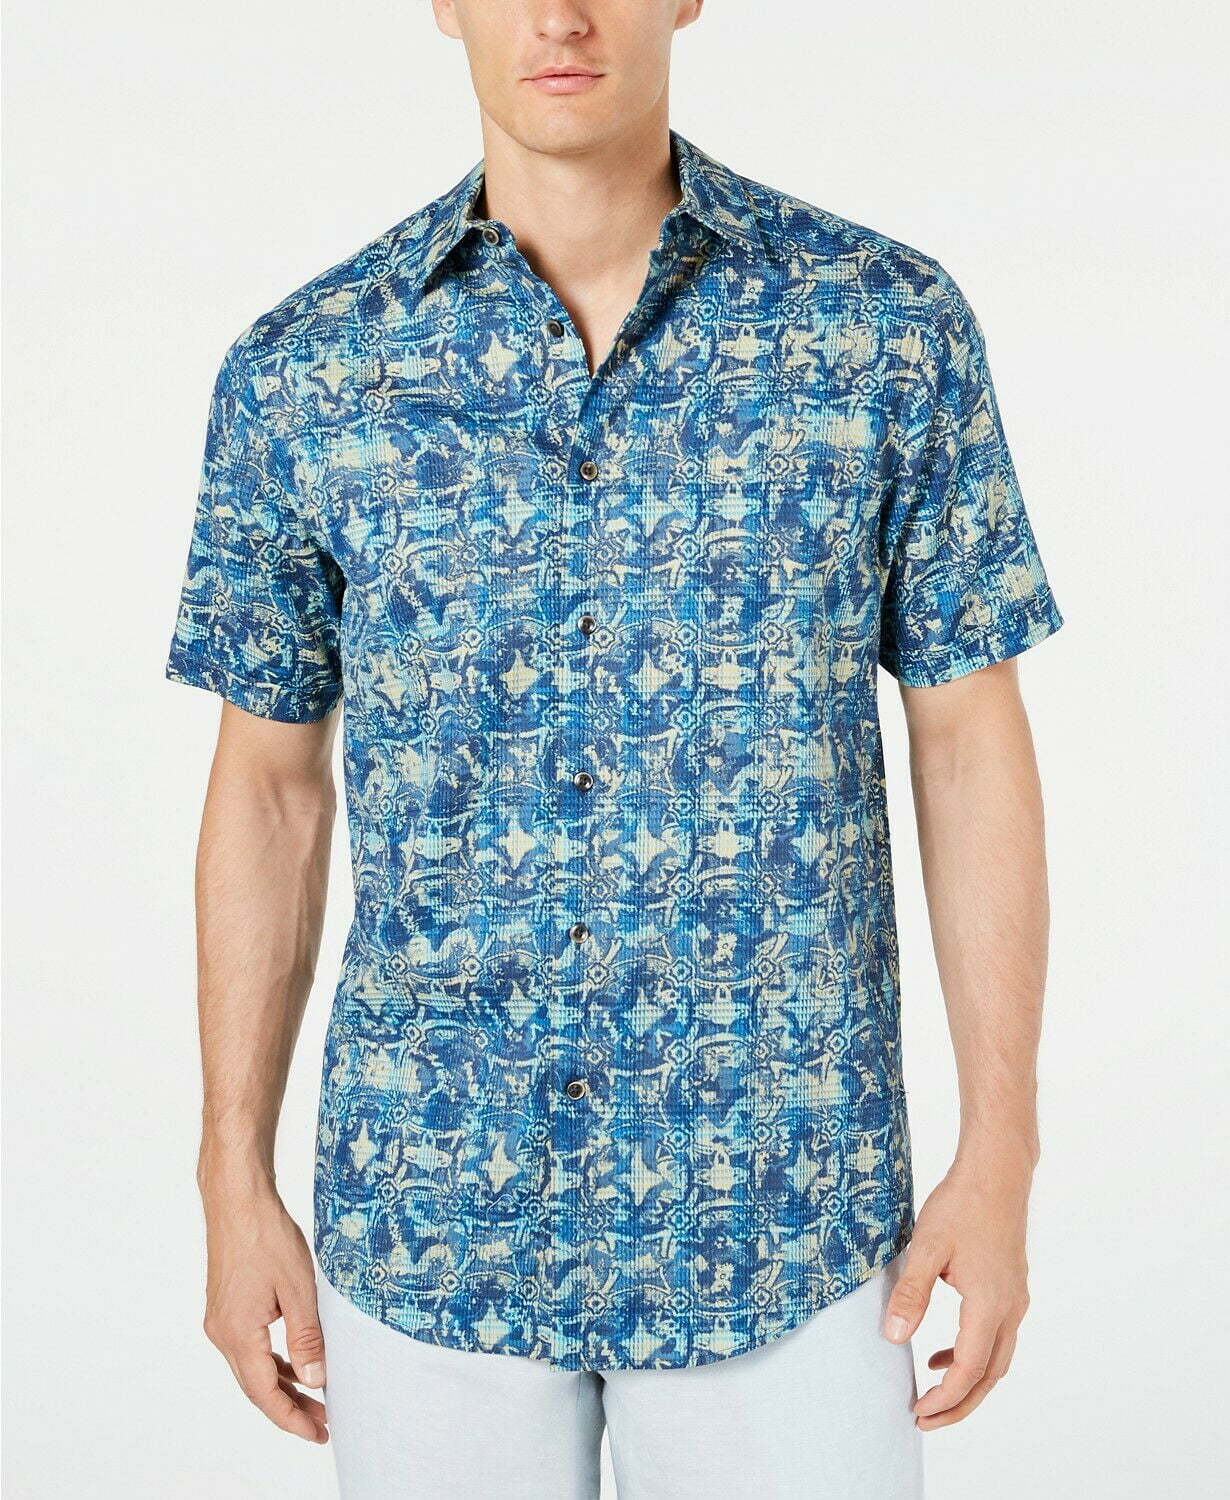 Tasso Elba Mens Shirt Blue Size XL Silk Tropical Print Button Down $65 #013 